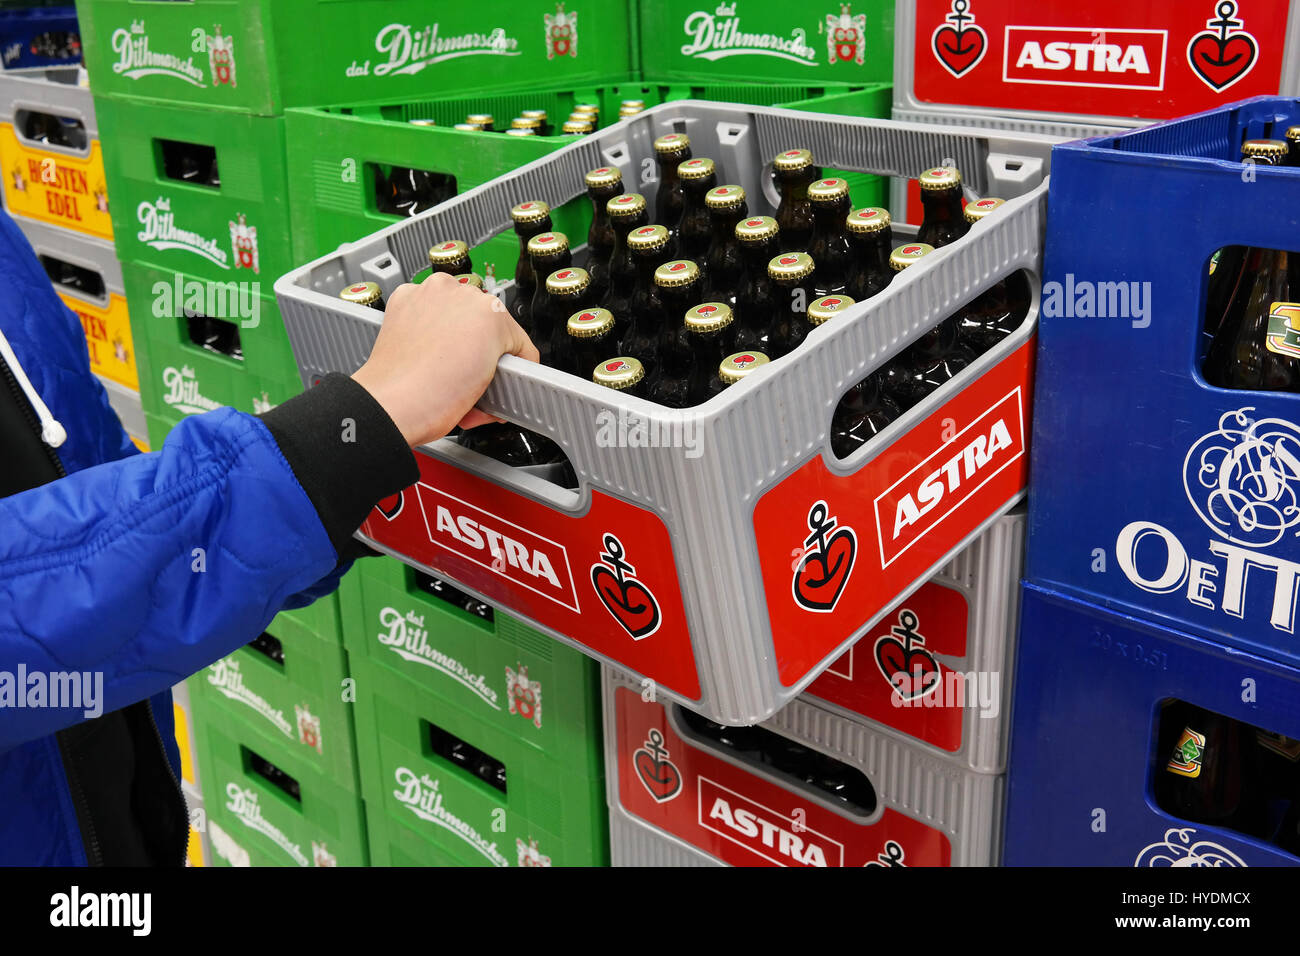 Les caisses de bière Astra dans un supermarché. Astra est une marque de bière lager pâle. Banque D'Images